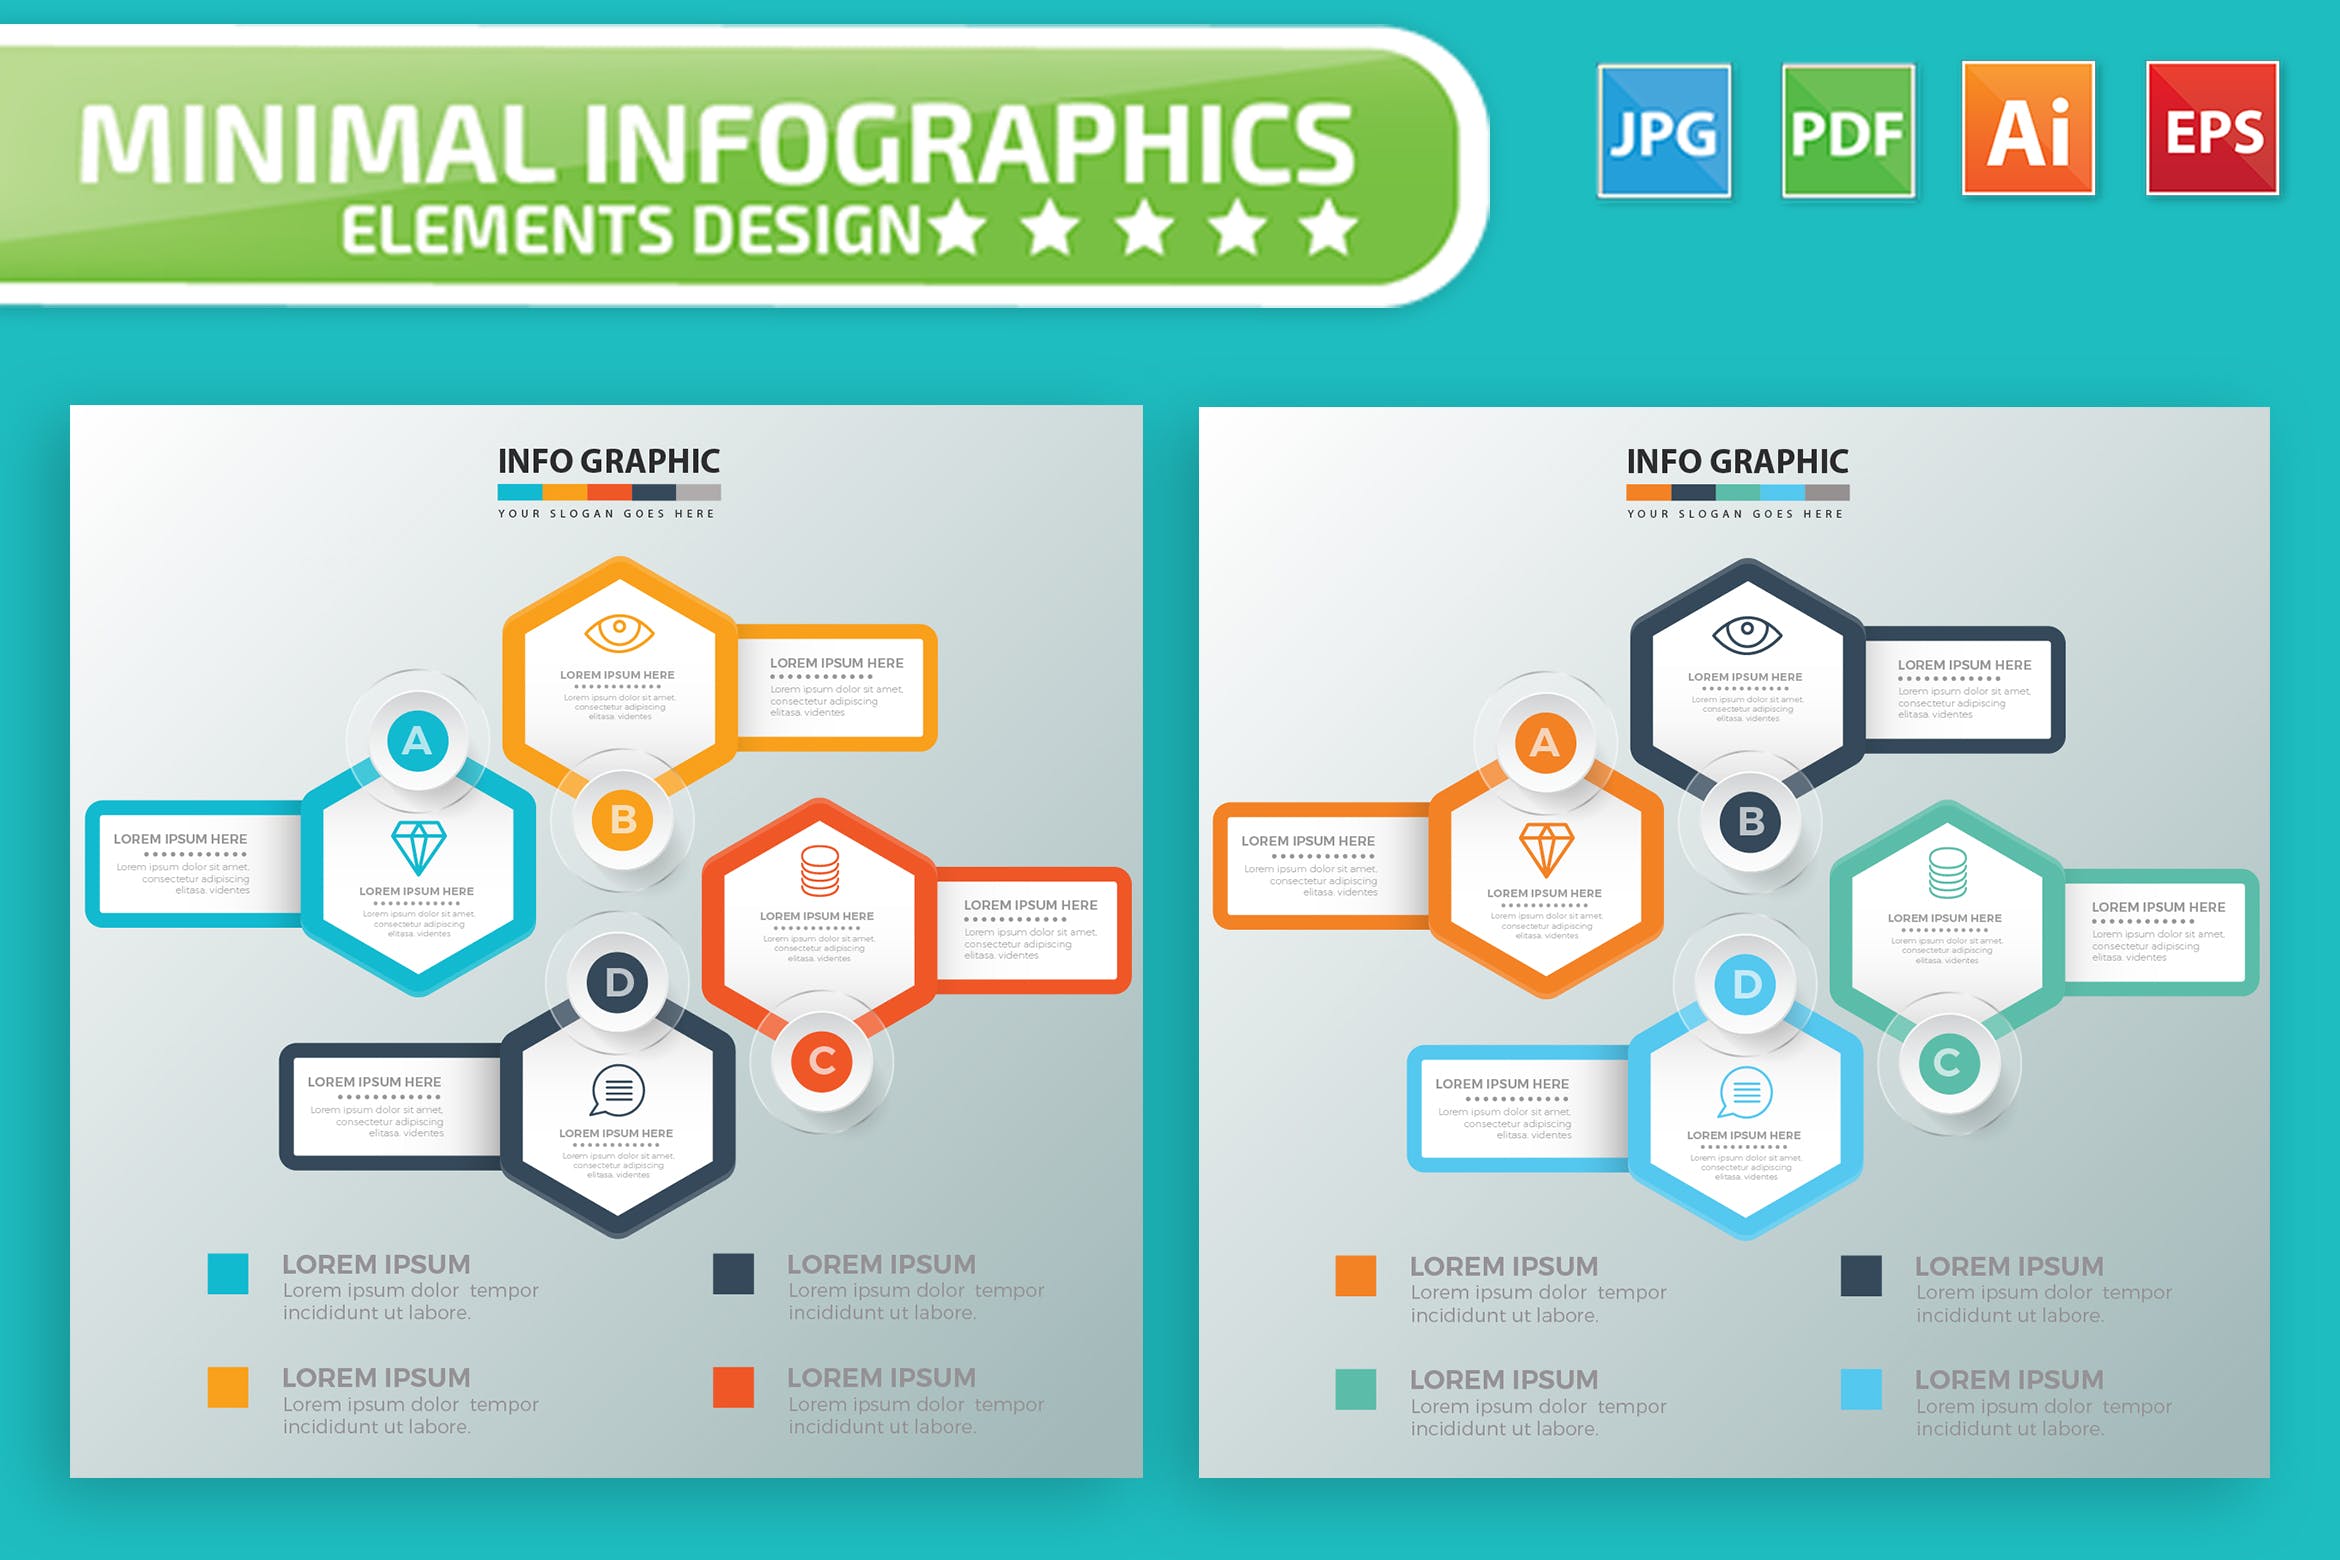 要点说明/重要特征信息图表矢量图形非凡图库精选素材v7 Infographic Elements Design插图